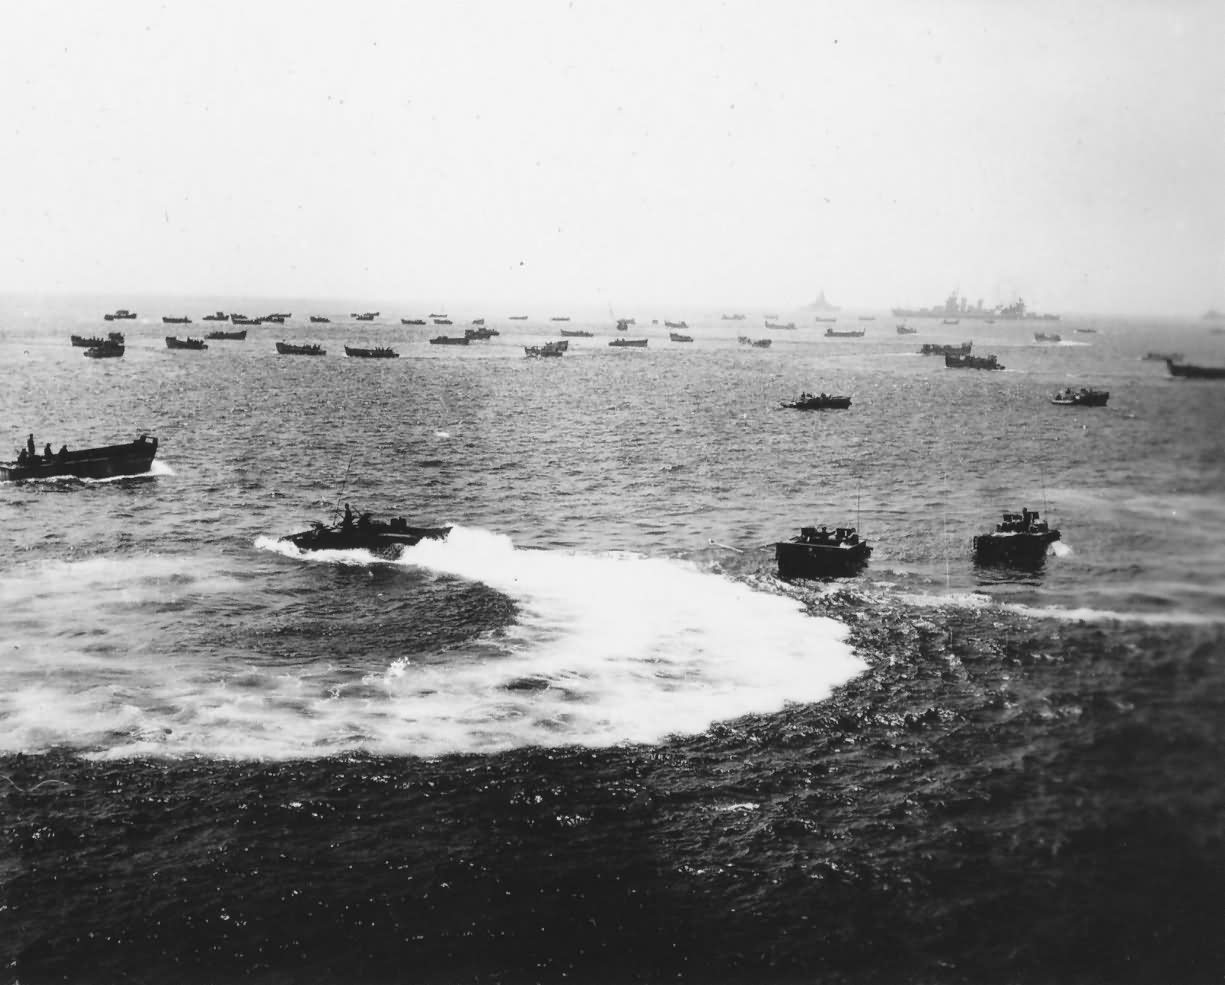 Fleet Ready to Invade Okinawa